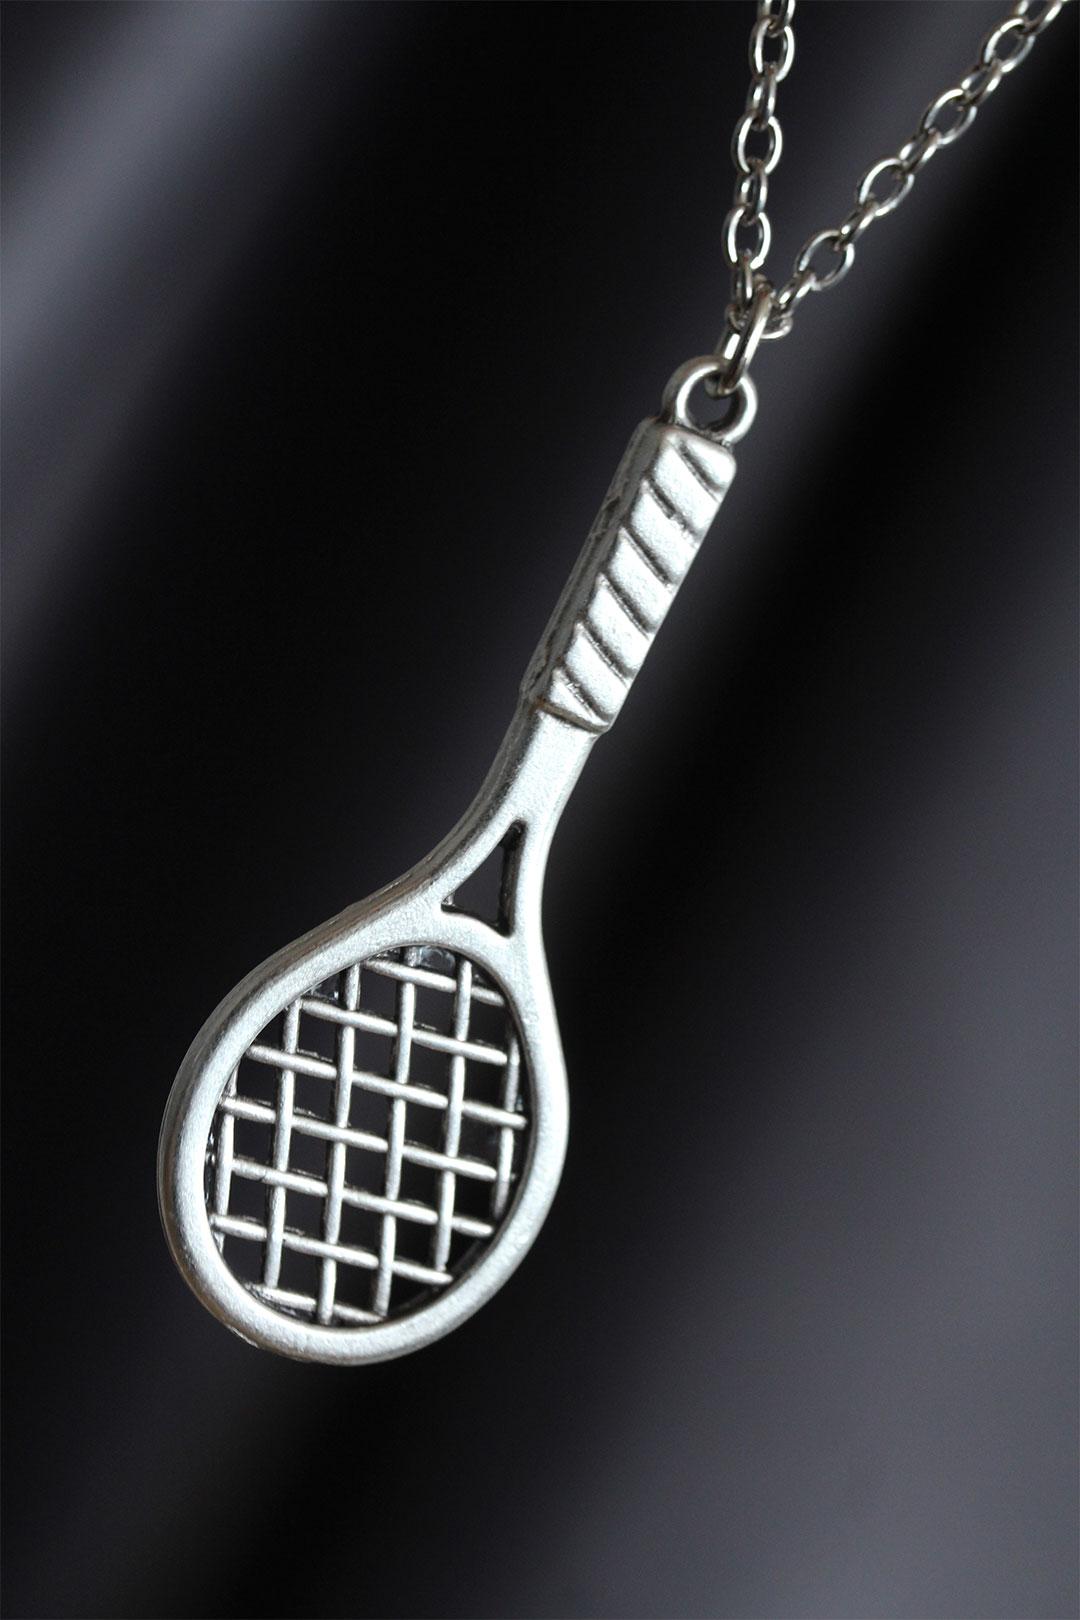 Tenis Raketi Figürlü Gümüş Renk Zincirli Erkek Kolye